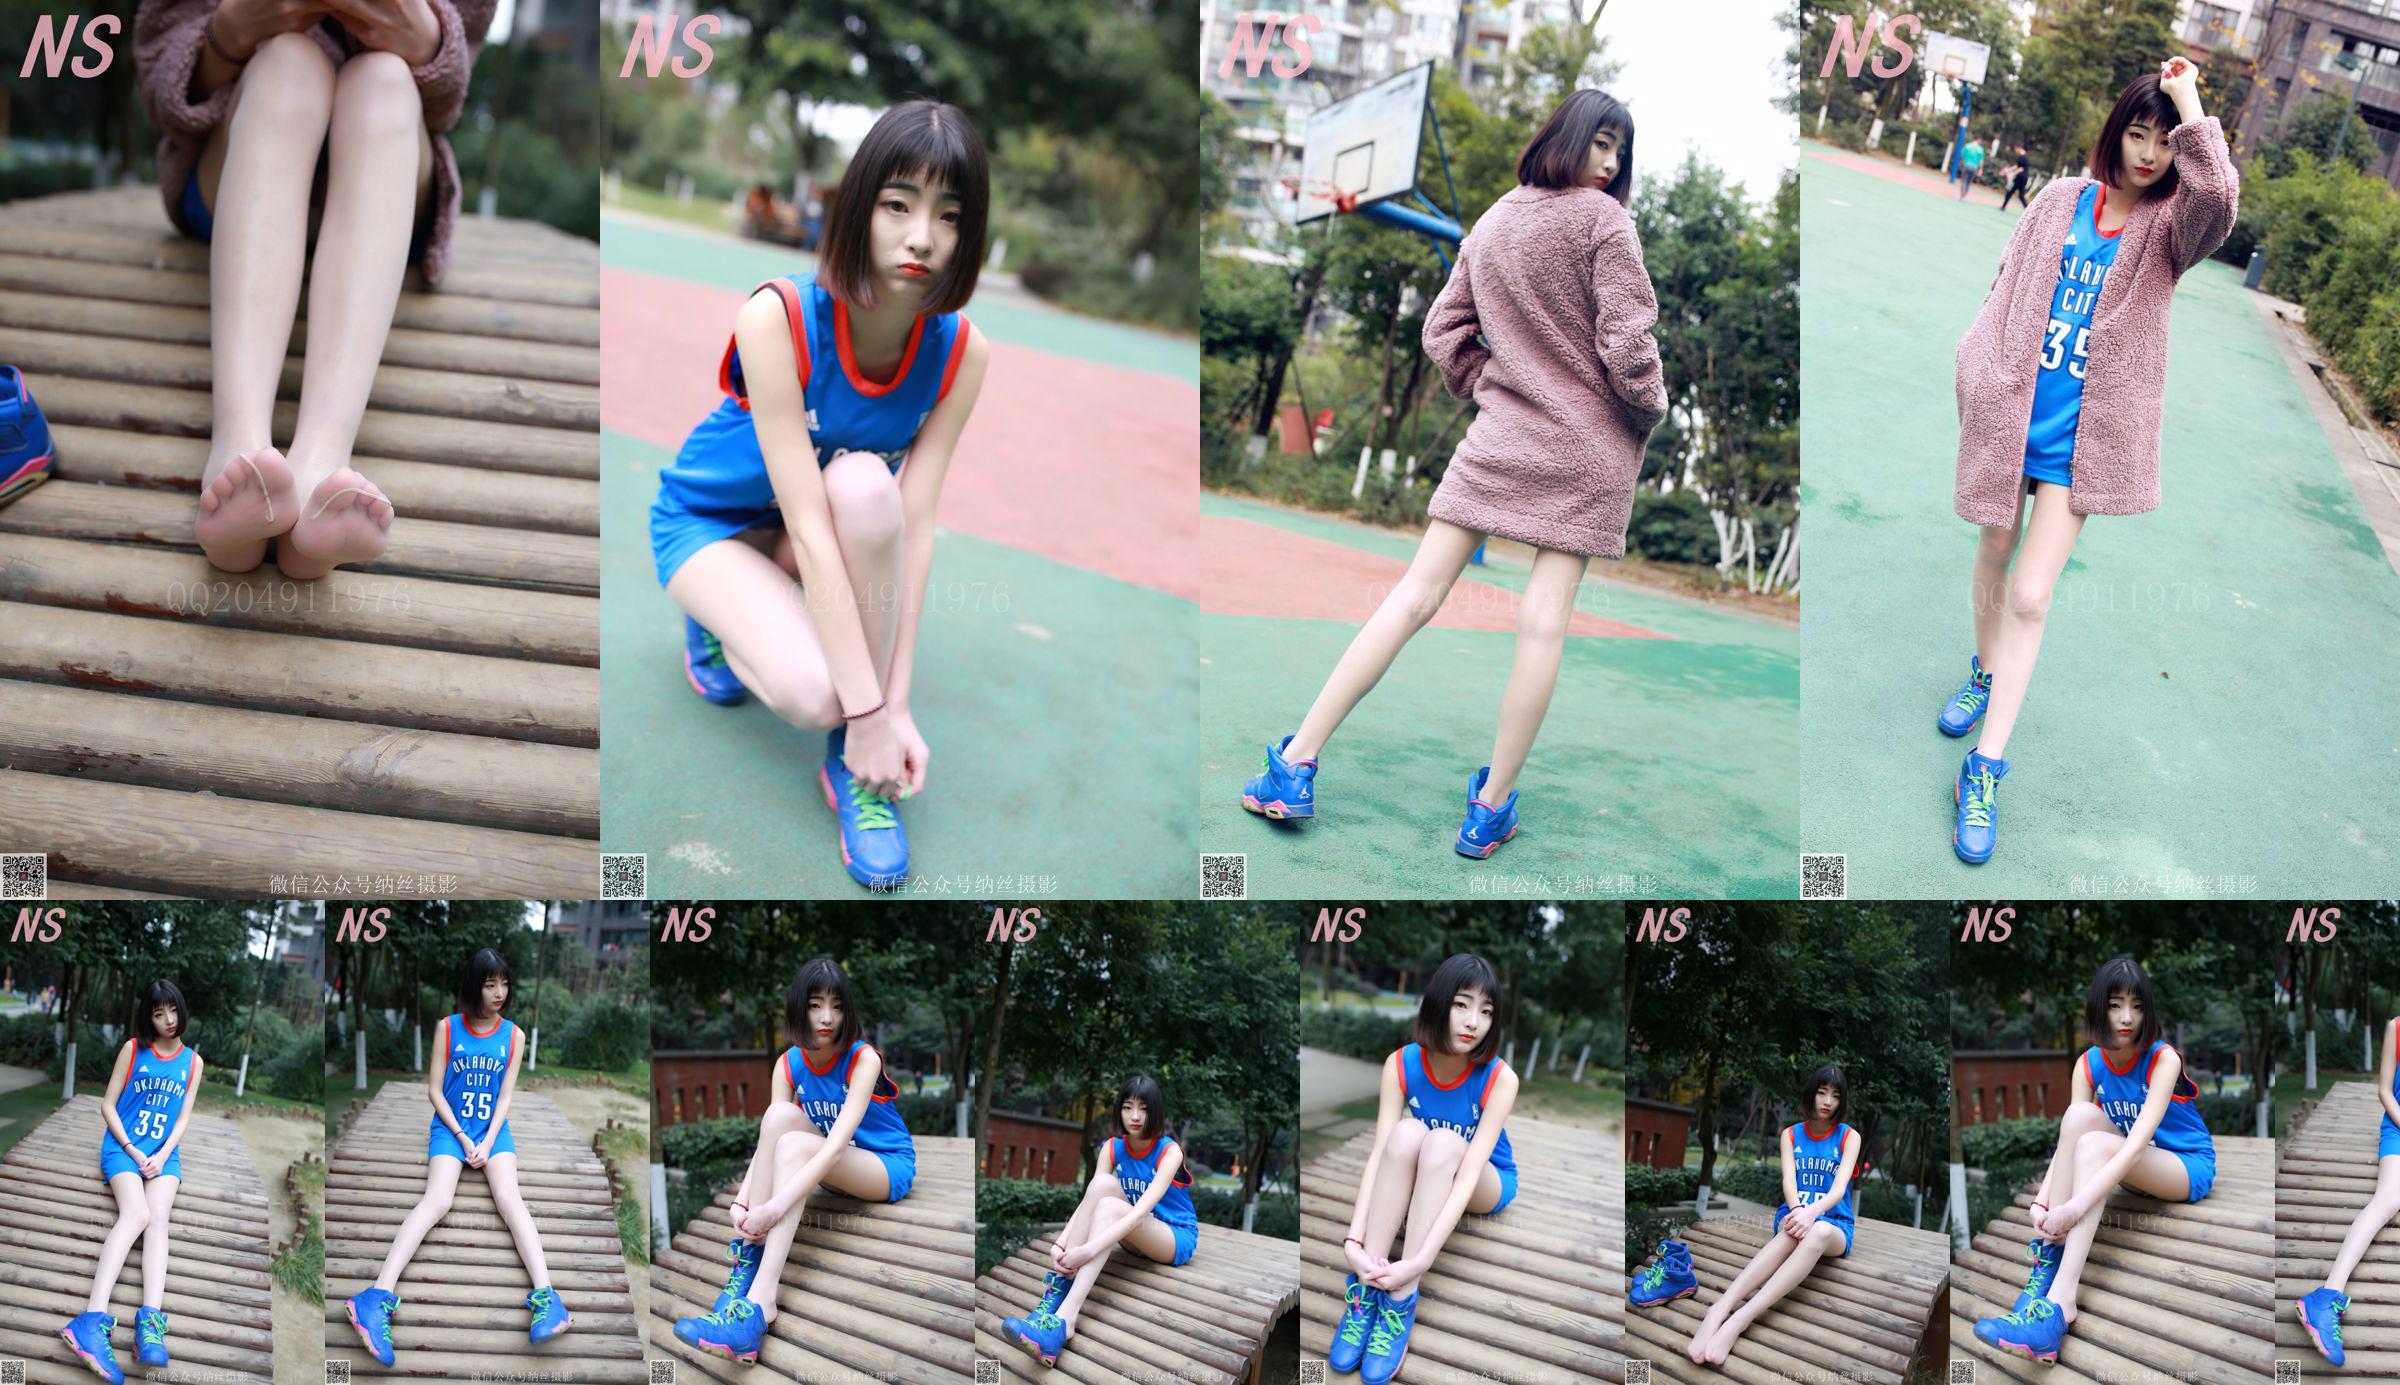 Chen Yujie "Basketball Girl" [Nasi Photography] N ° 107 No.b3a504 Page 49